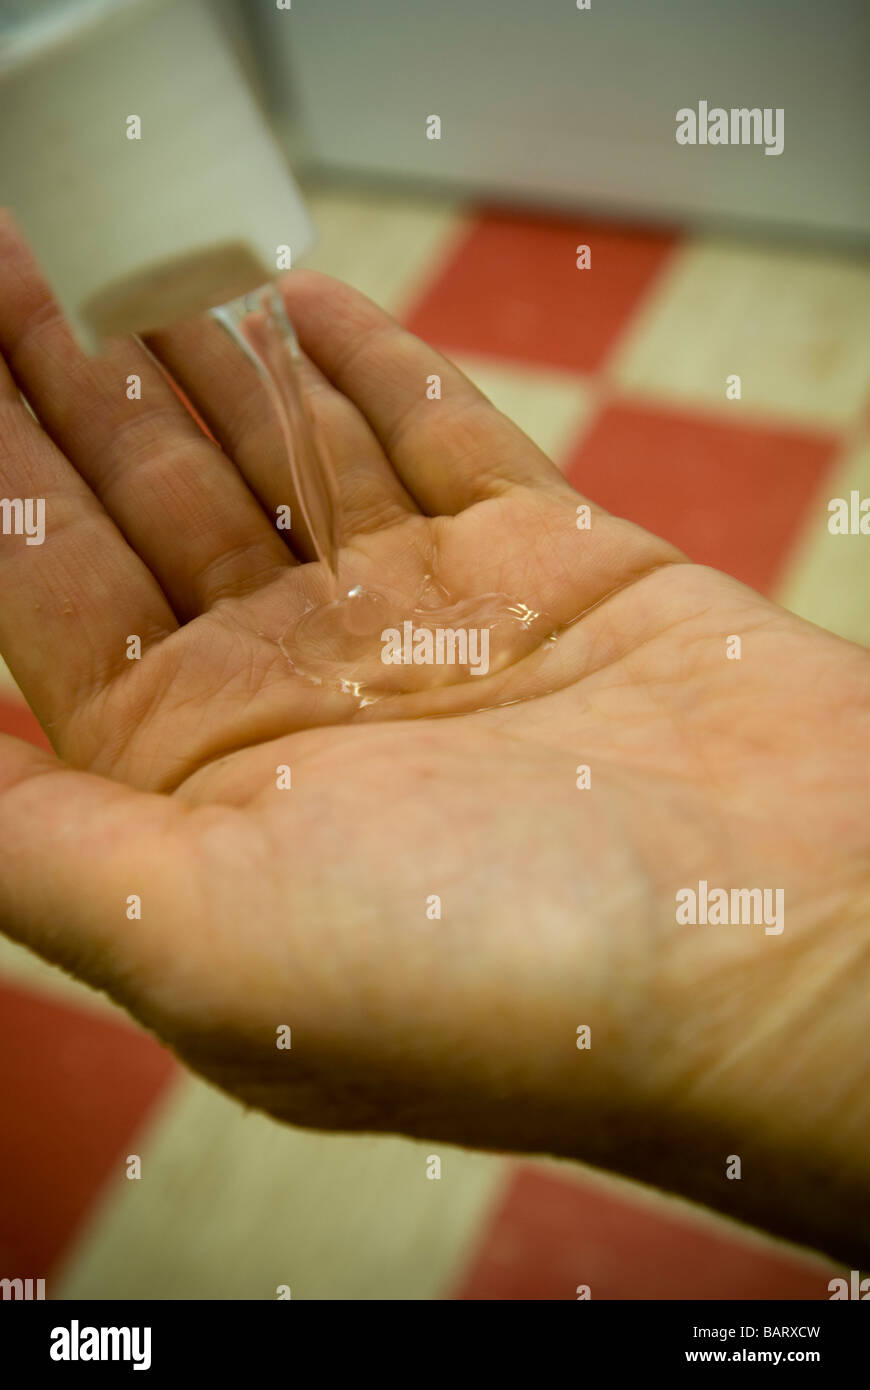 Una mujer lava sus manos con gel antiséptico y limpieza de manos Foto de stock